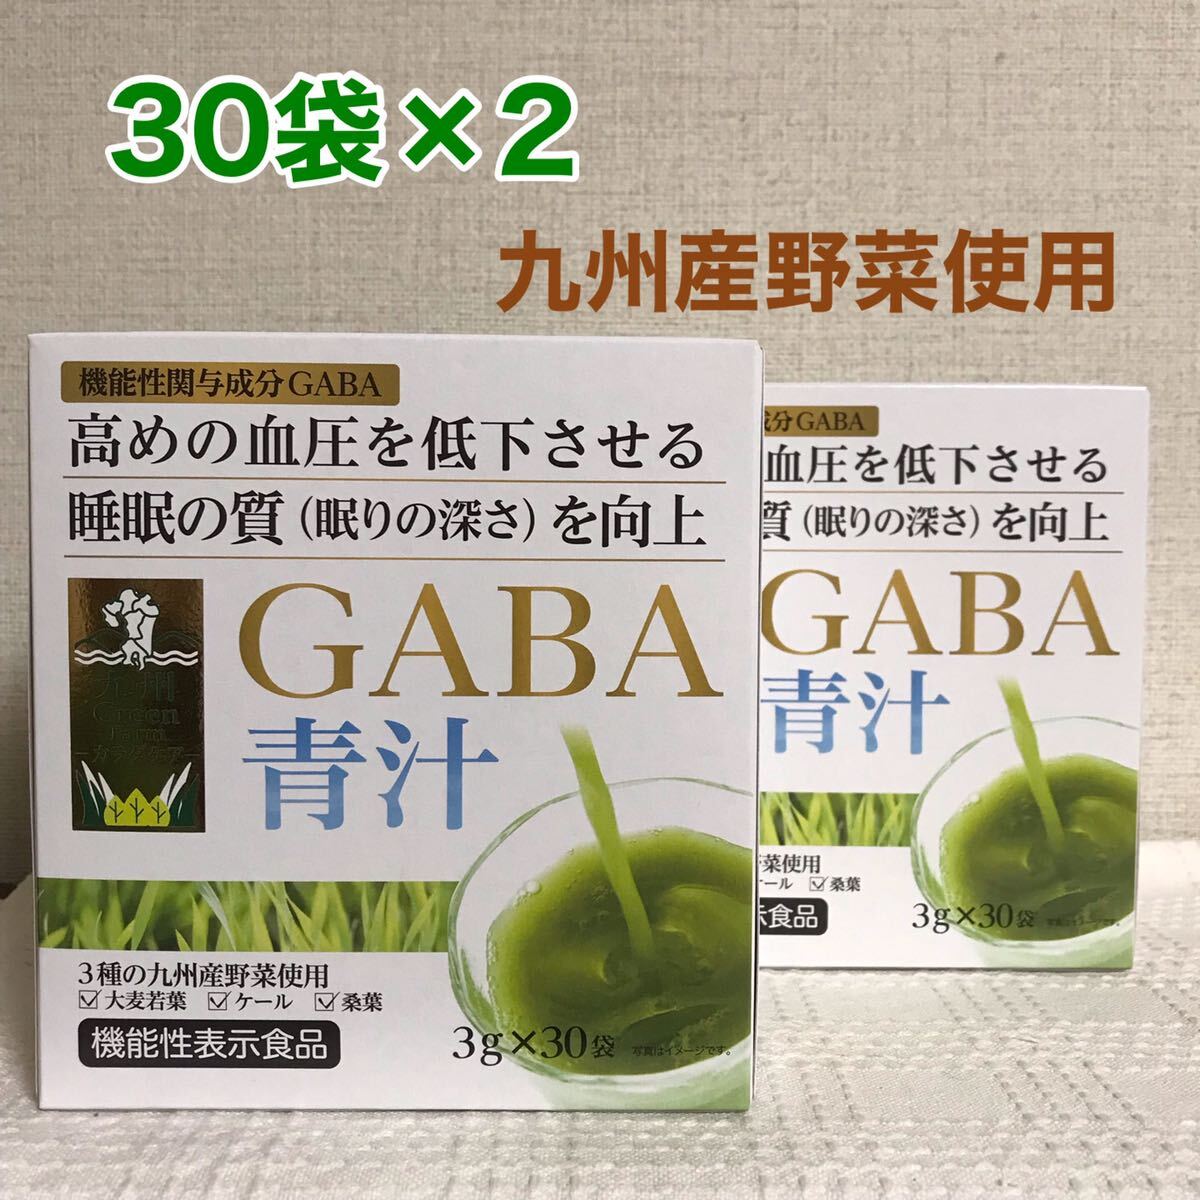 GABA зеленый сок Green Farmkalada уход зеленый сок 3g×30 пакет входить ×2 коробка минут ячмень . лист, кудрявая капуста, тутовик лист 